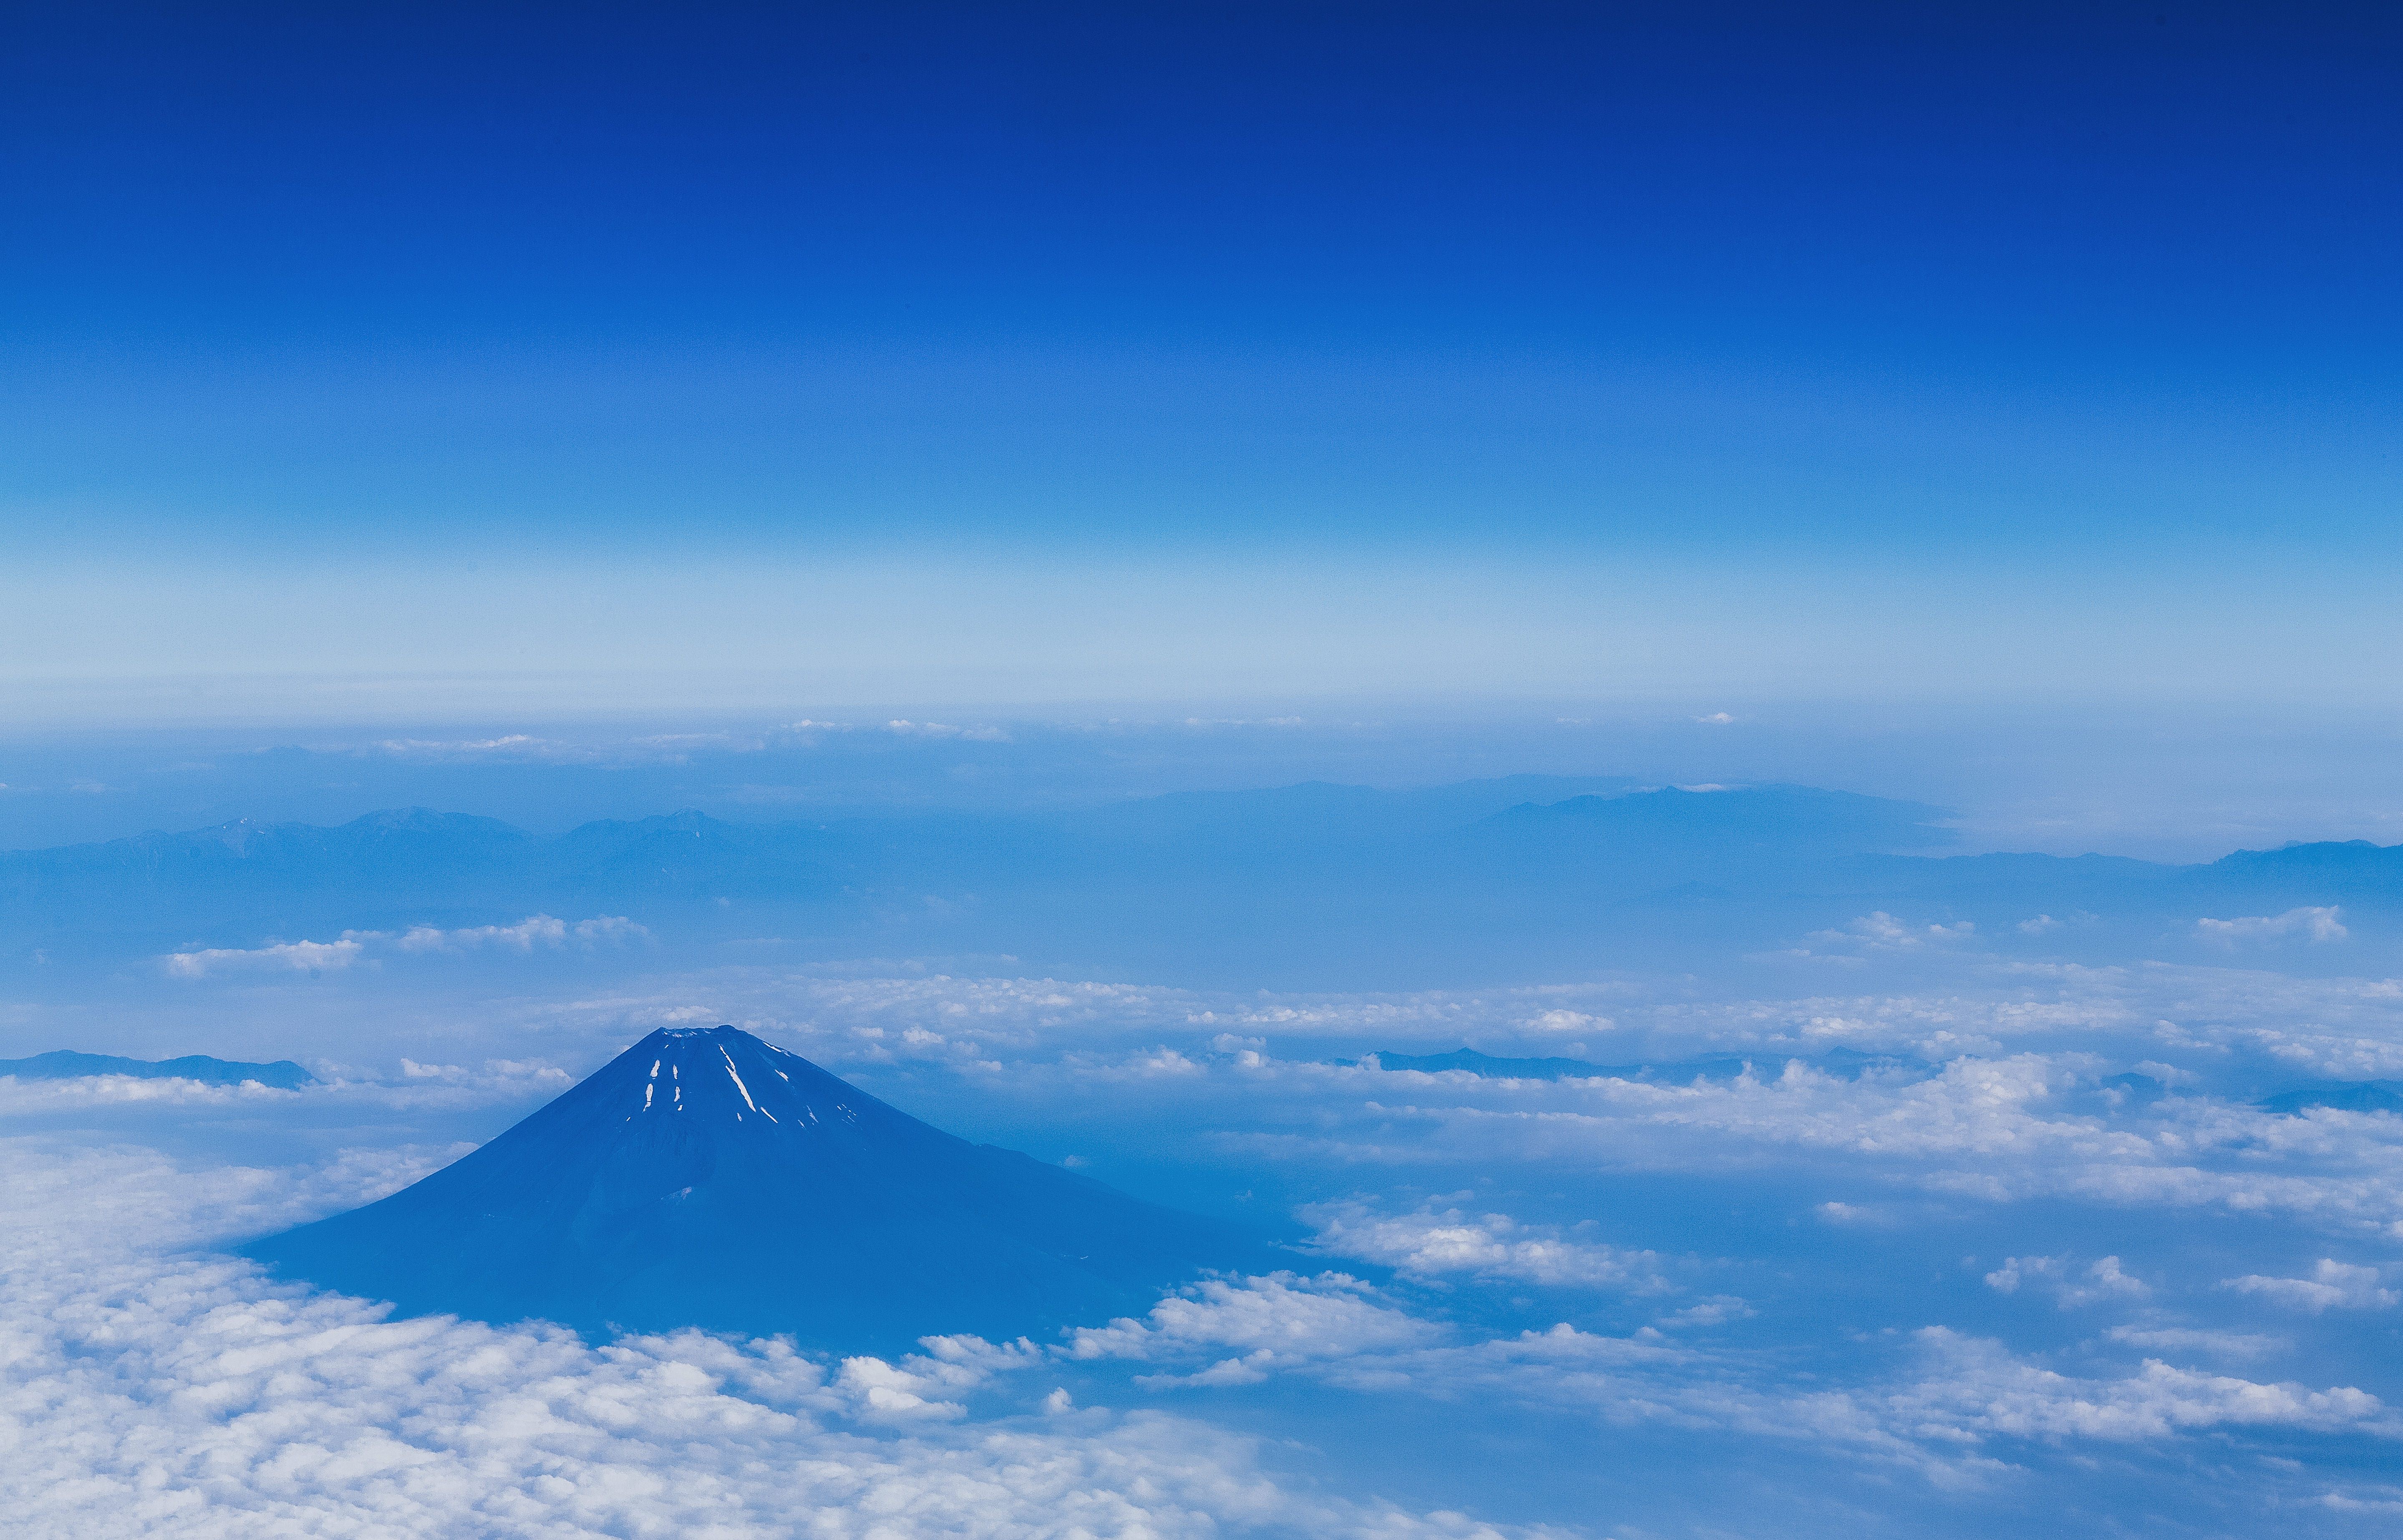 上空から雪解けの富士山 夏 の写真素材 ぱくたそ